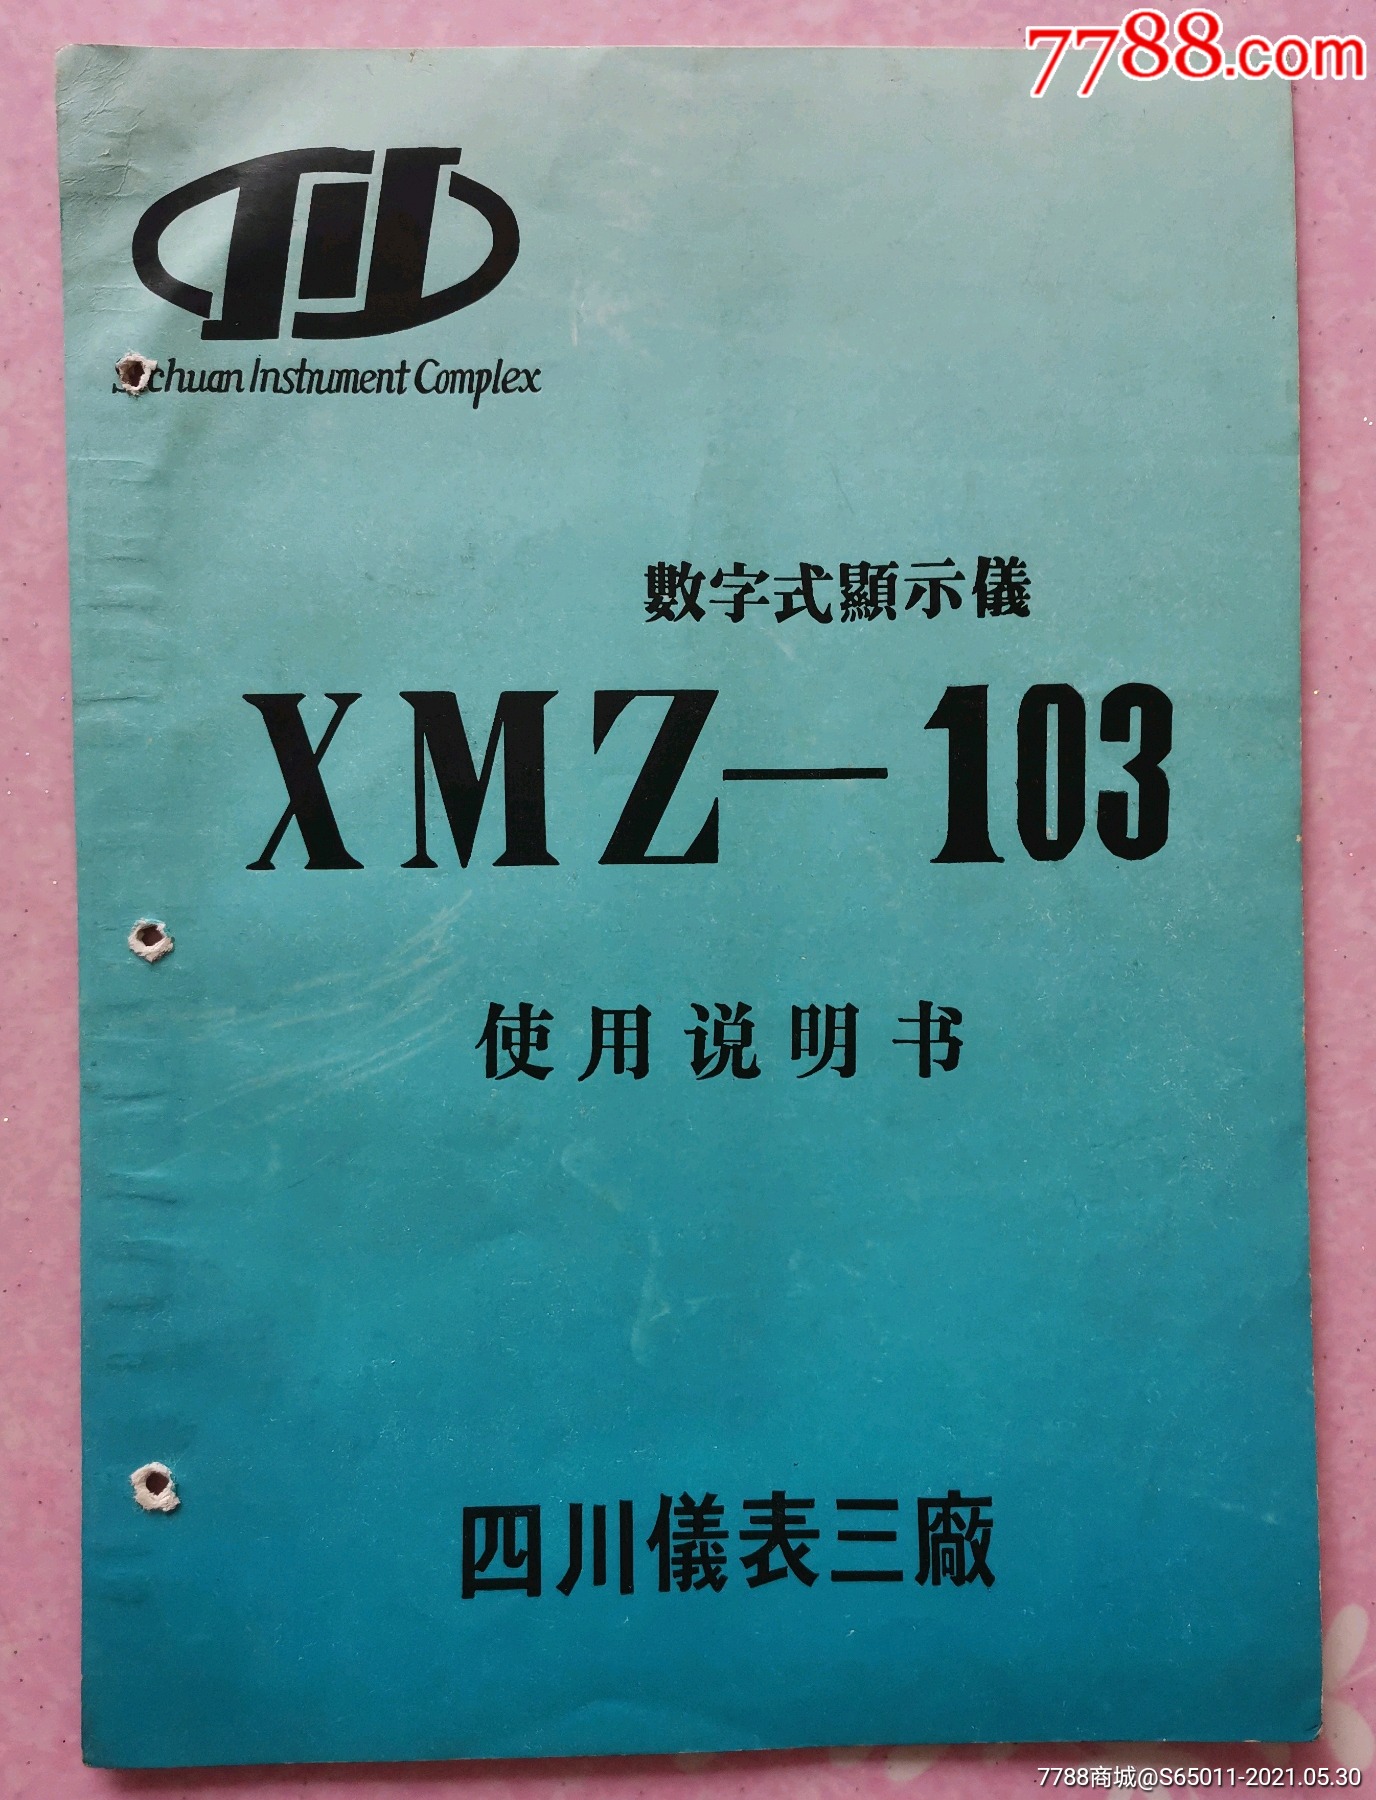 四川仪表三厂xmz—103数字式显示仪使用说明书